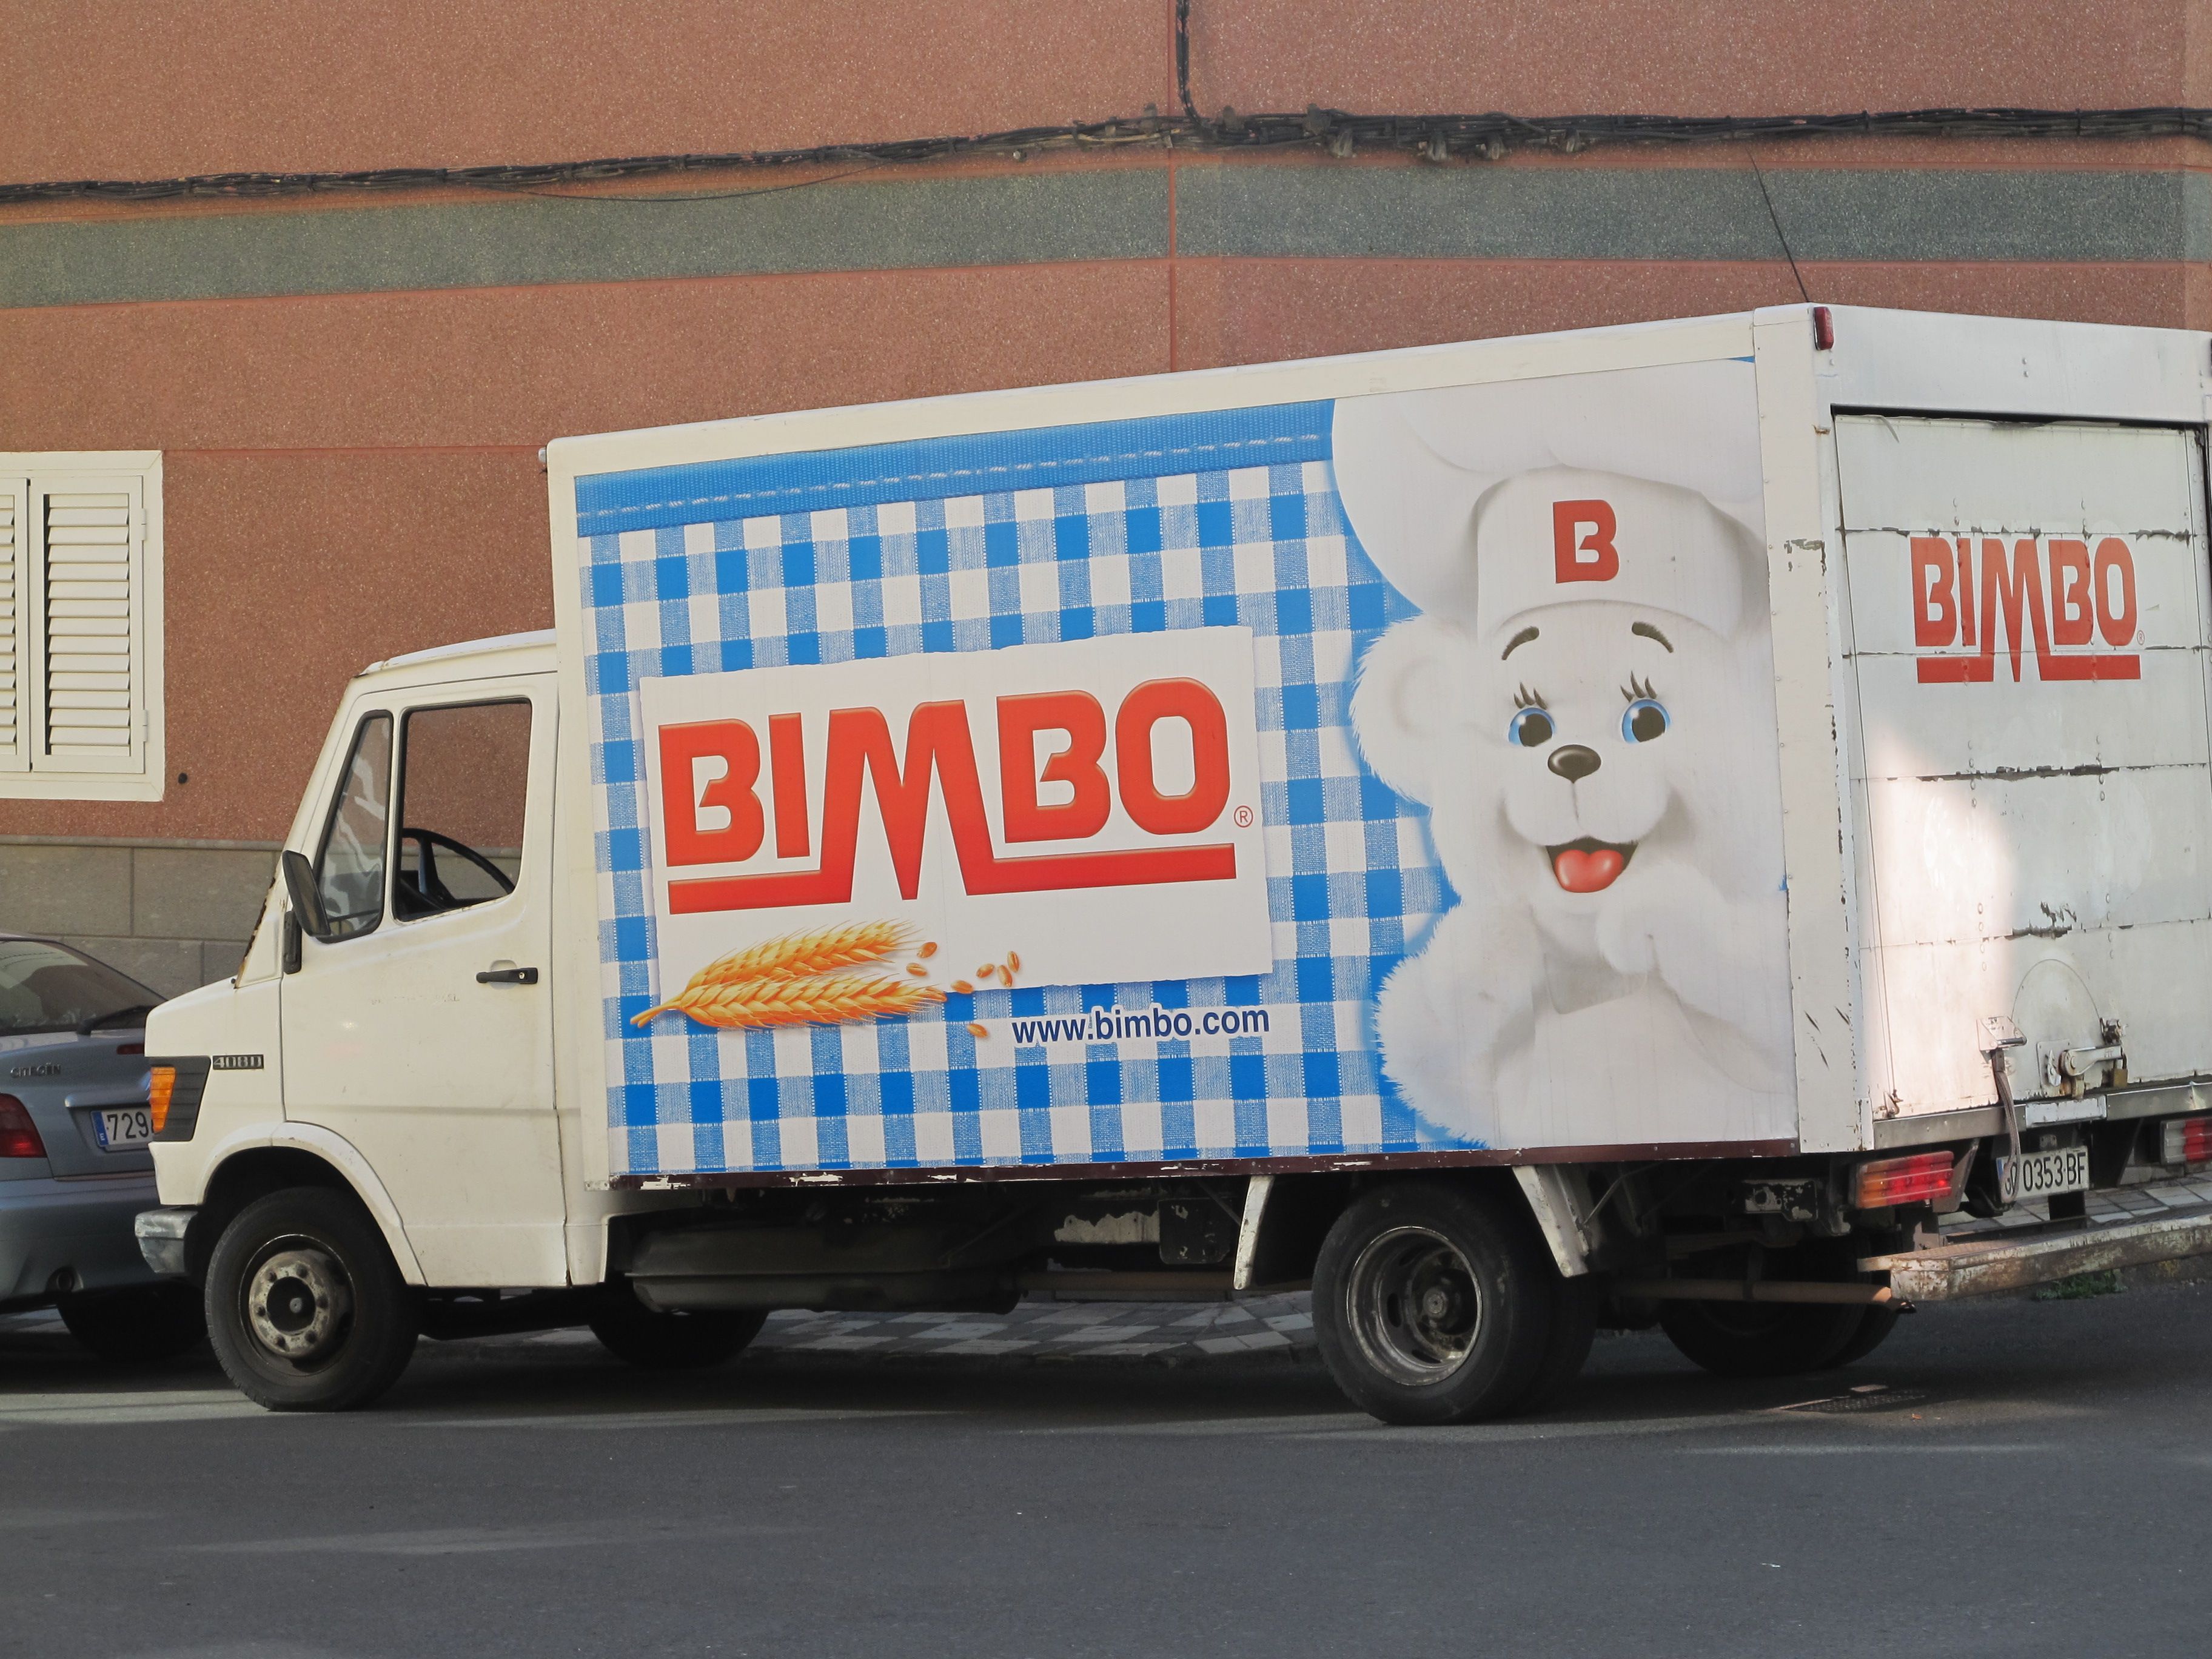 Bimbo tanca la compra de Panrico i adquireix marques com Donuts i Bollycao